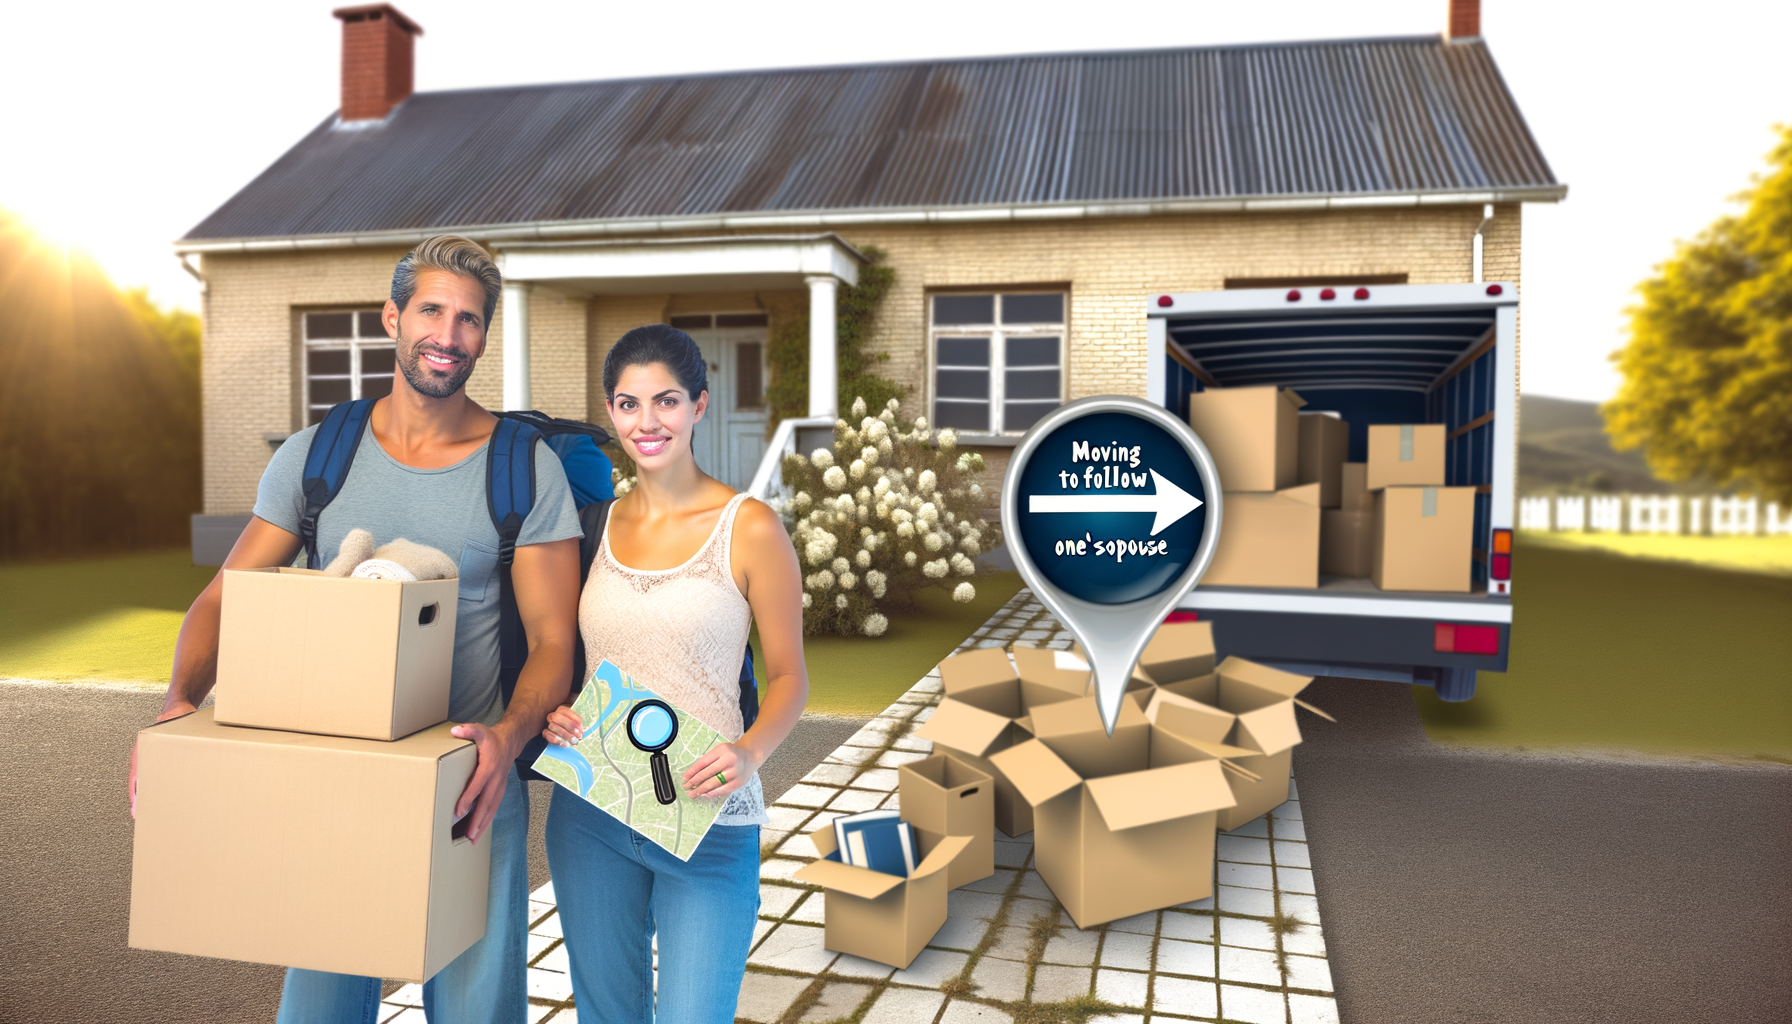 "Couple emballant des cartons pour déménager afin de suivre le travail du conjoint"